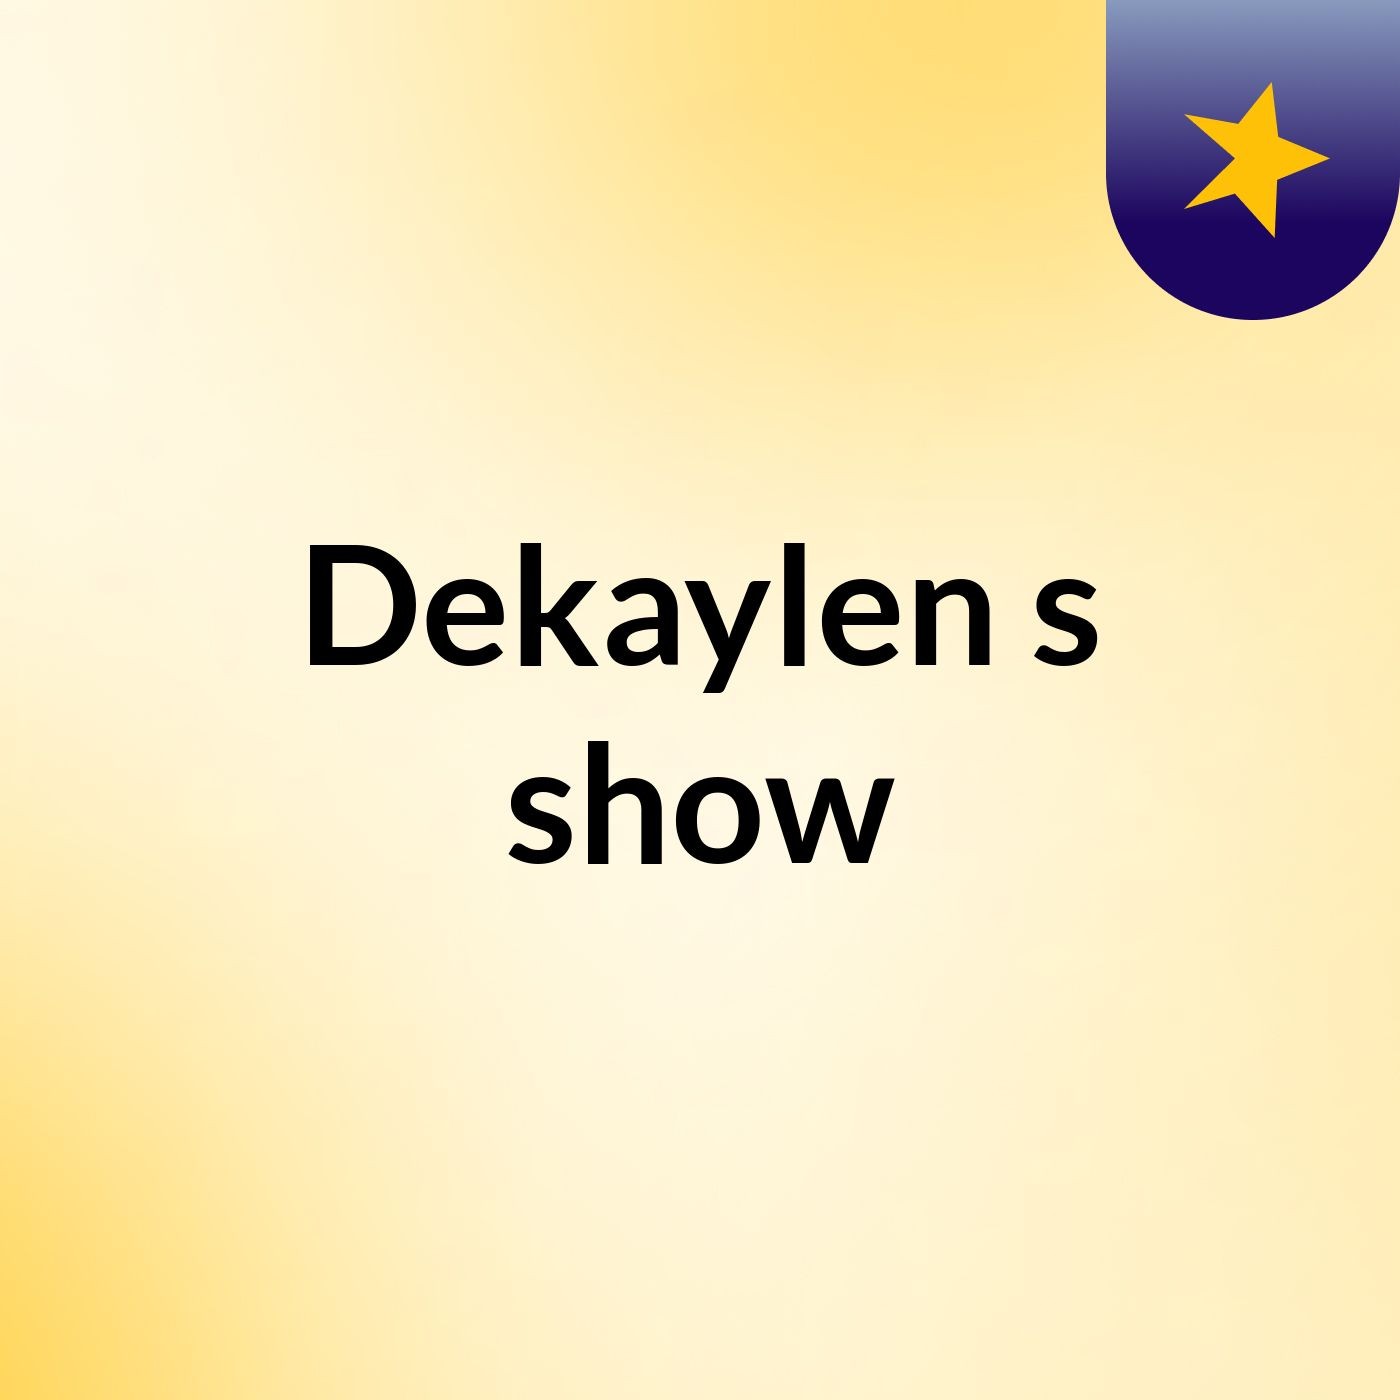 Dekaylen's show